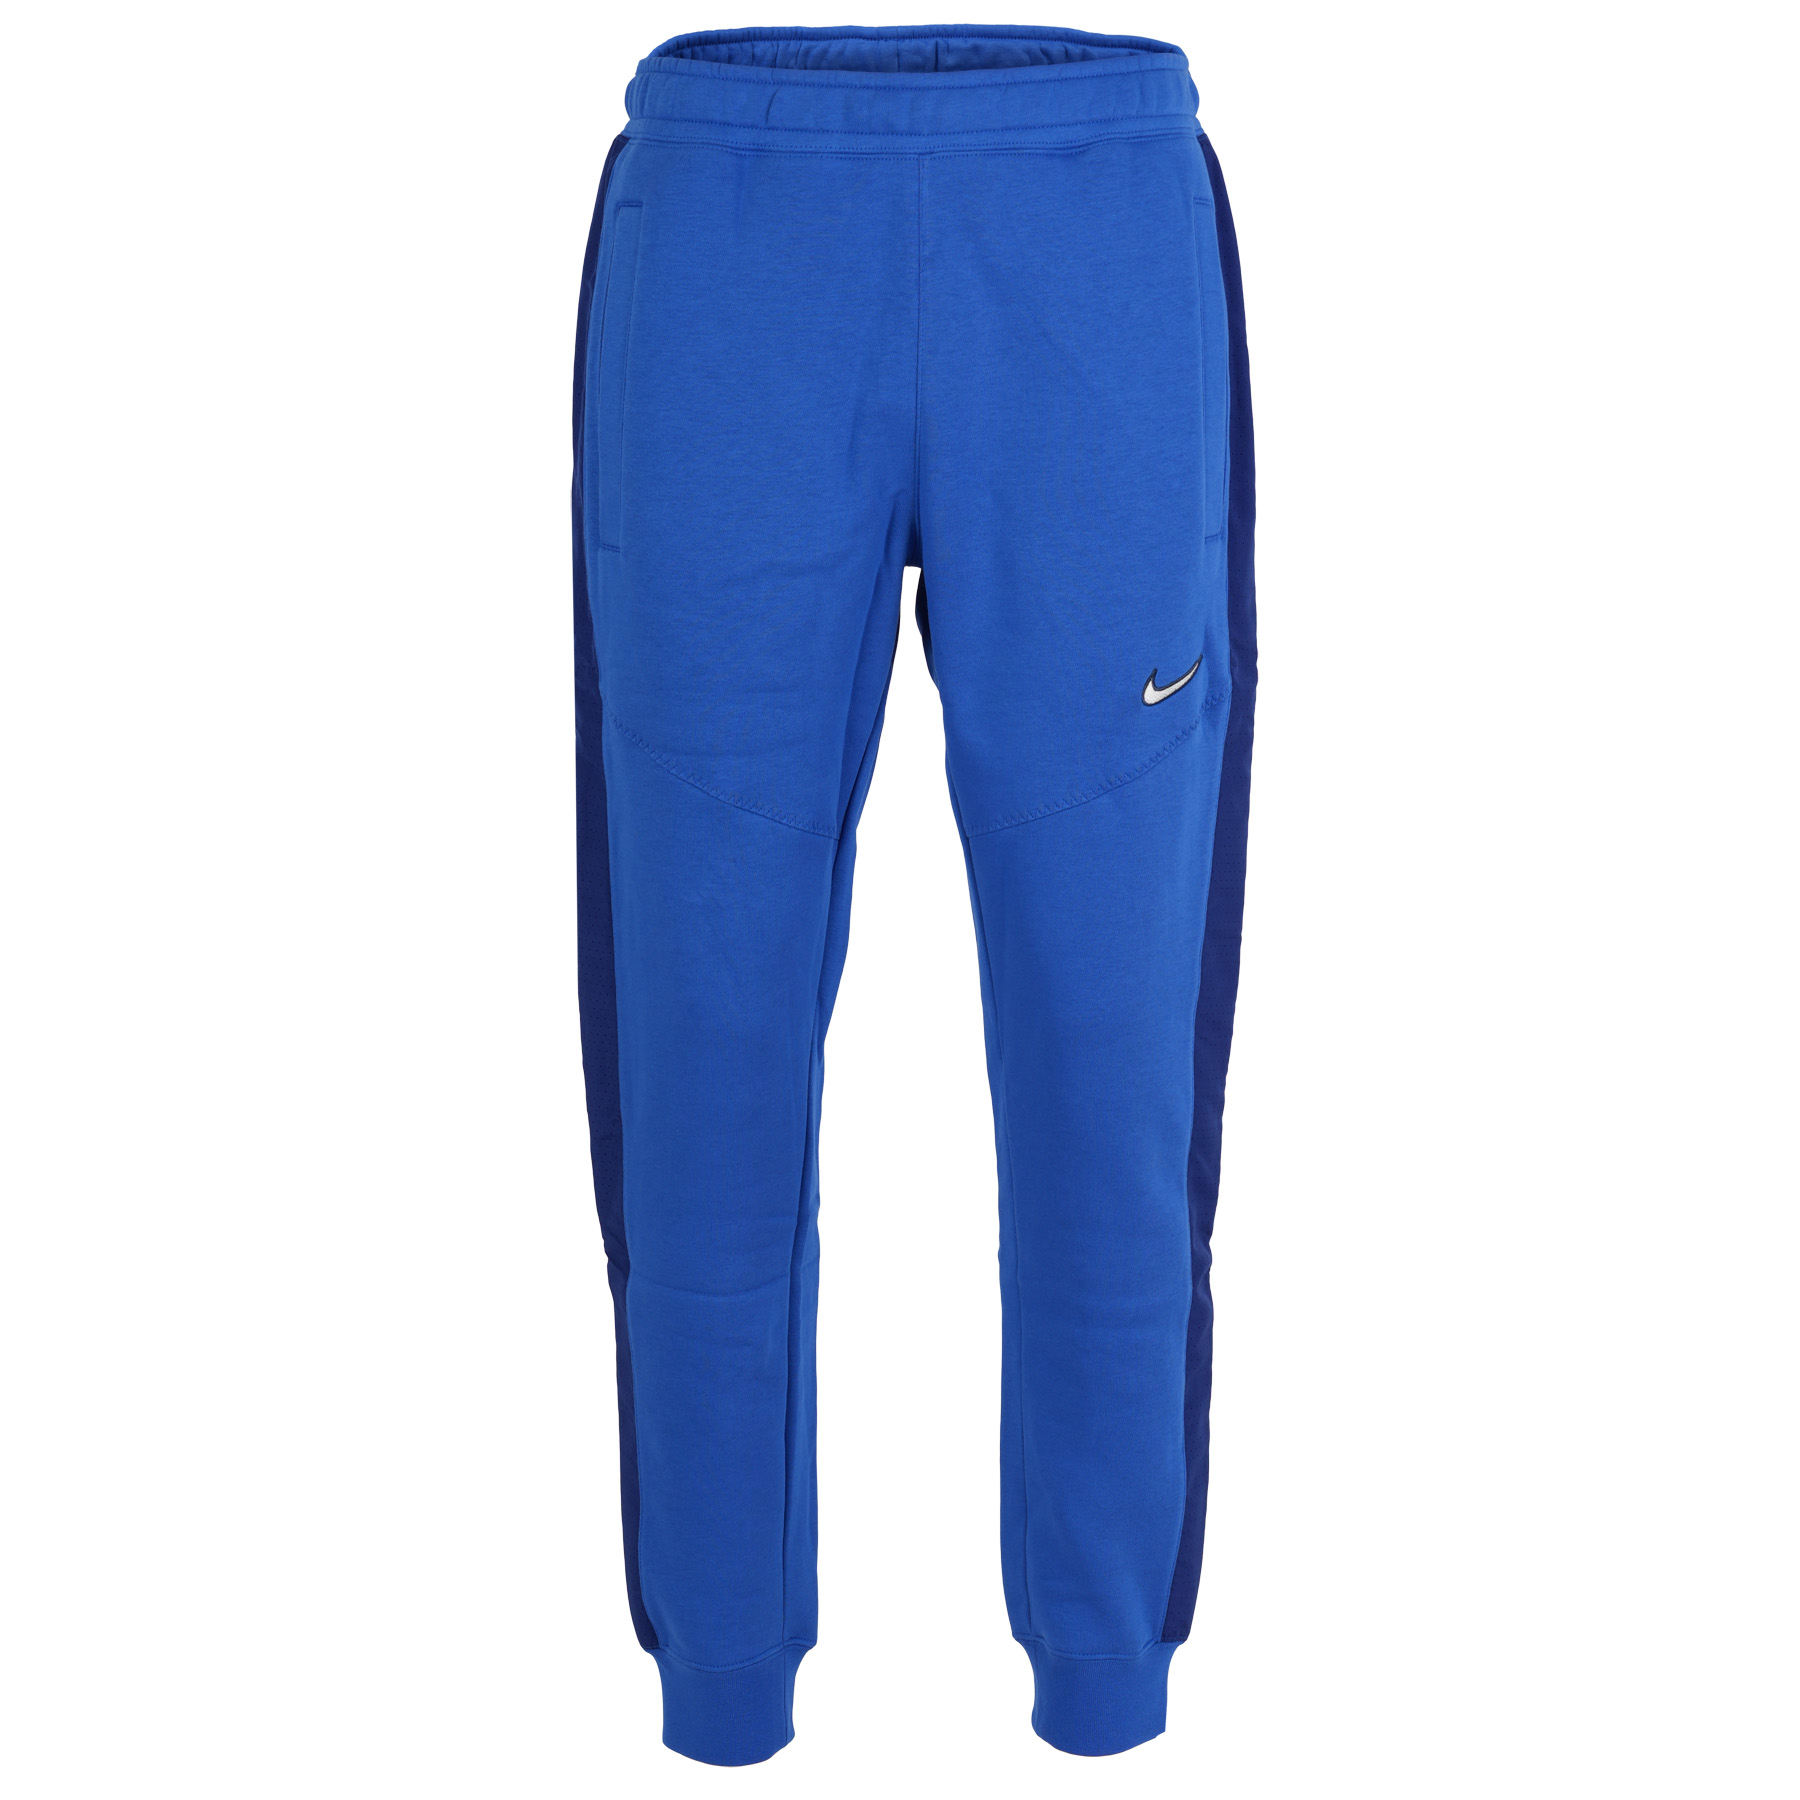 Productfoto van Nike Sportswear Fleece Joggingbroek Heren - game royal/deep royal blue FN0246-480